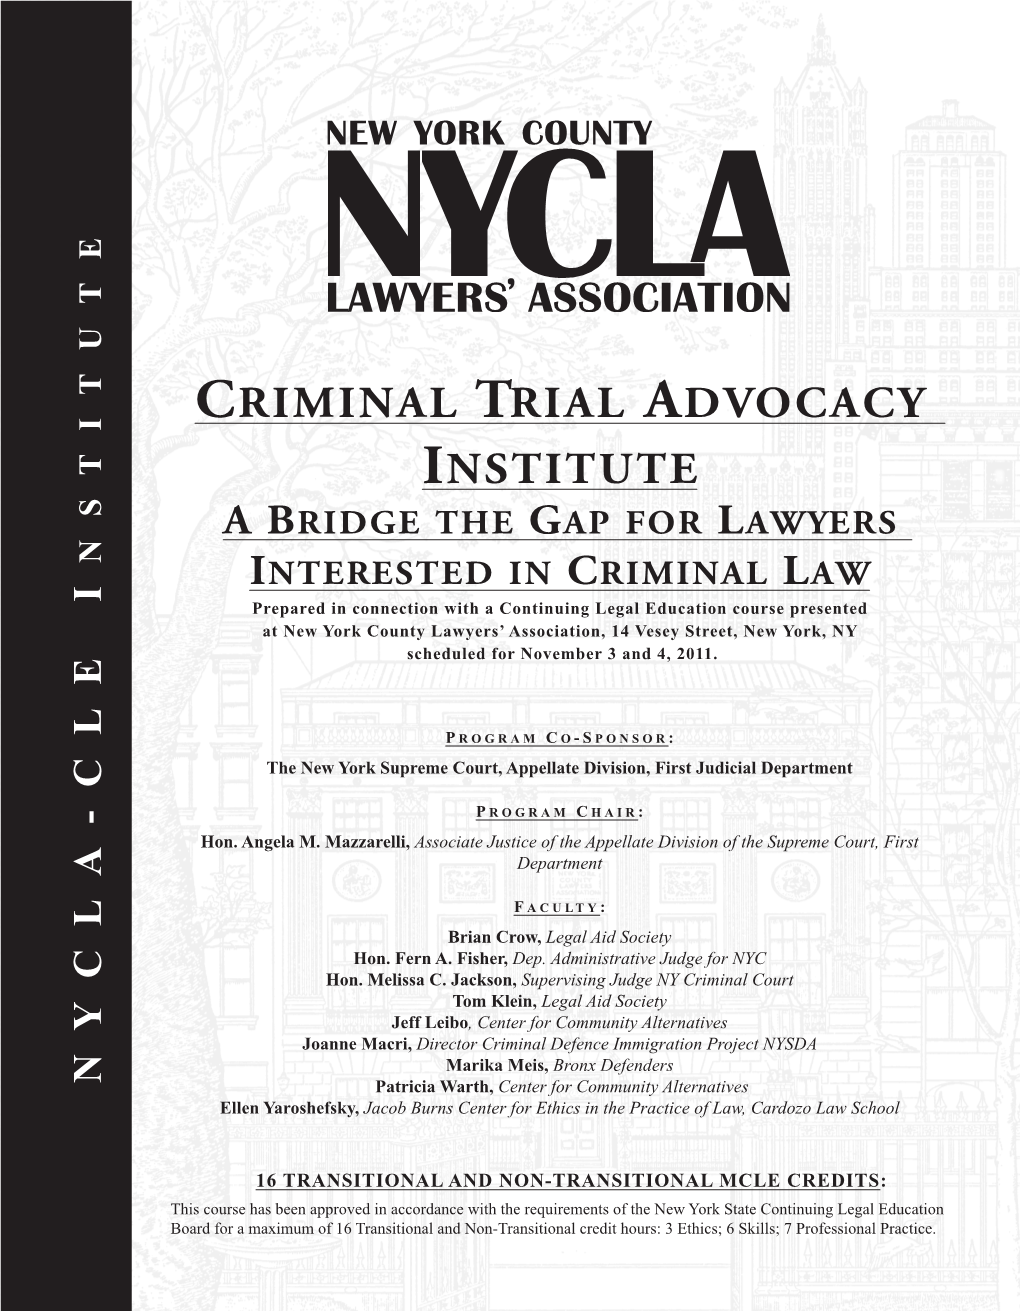 Criminal Trial Advocacy Institute